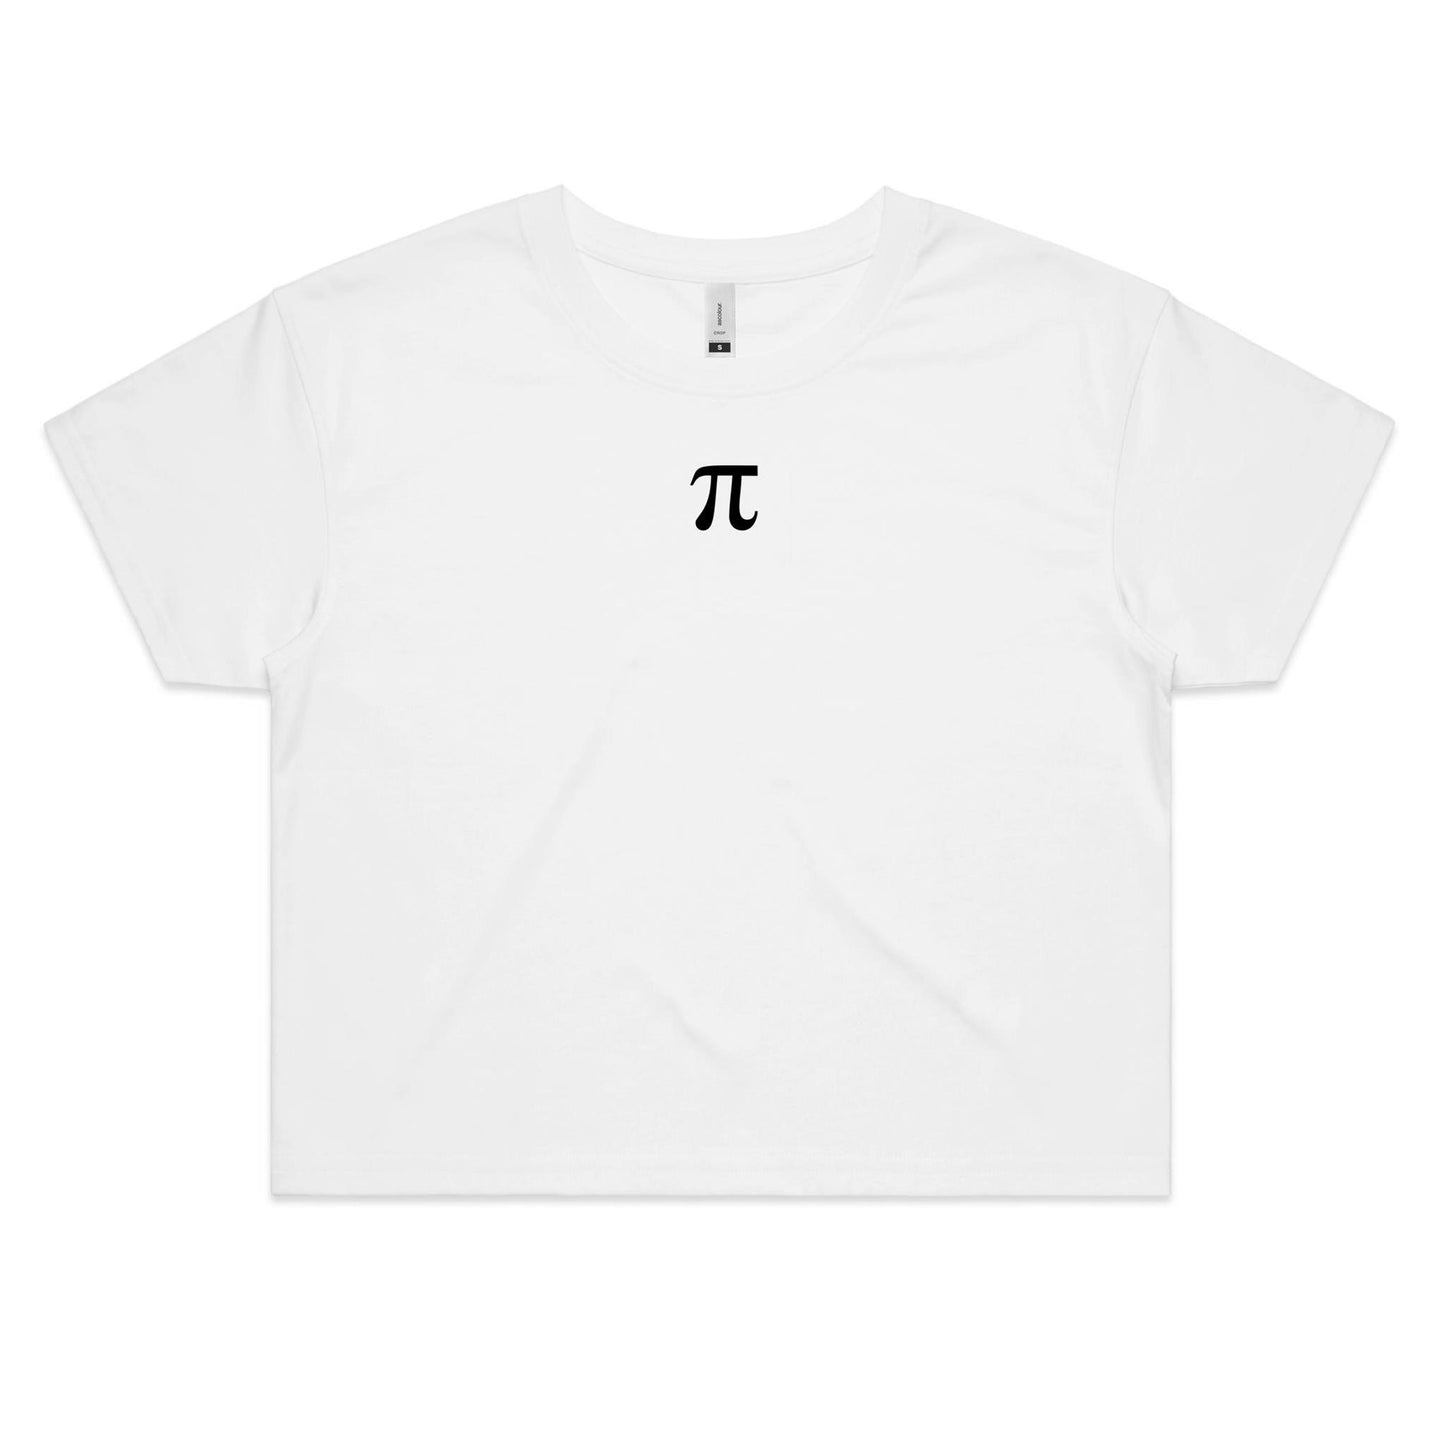 Pi Crop T Shirts for Women